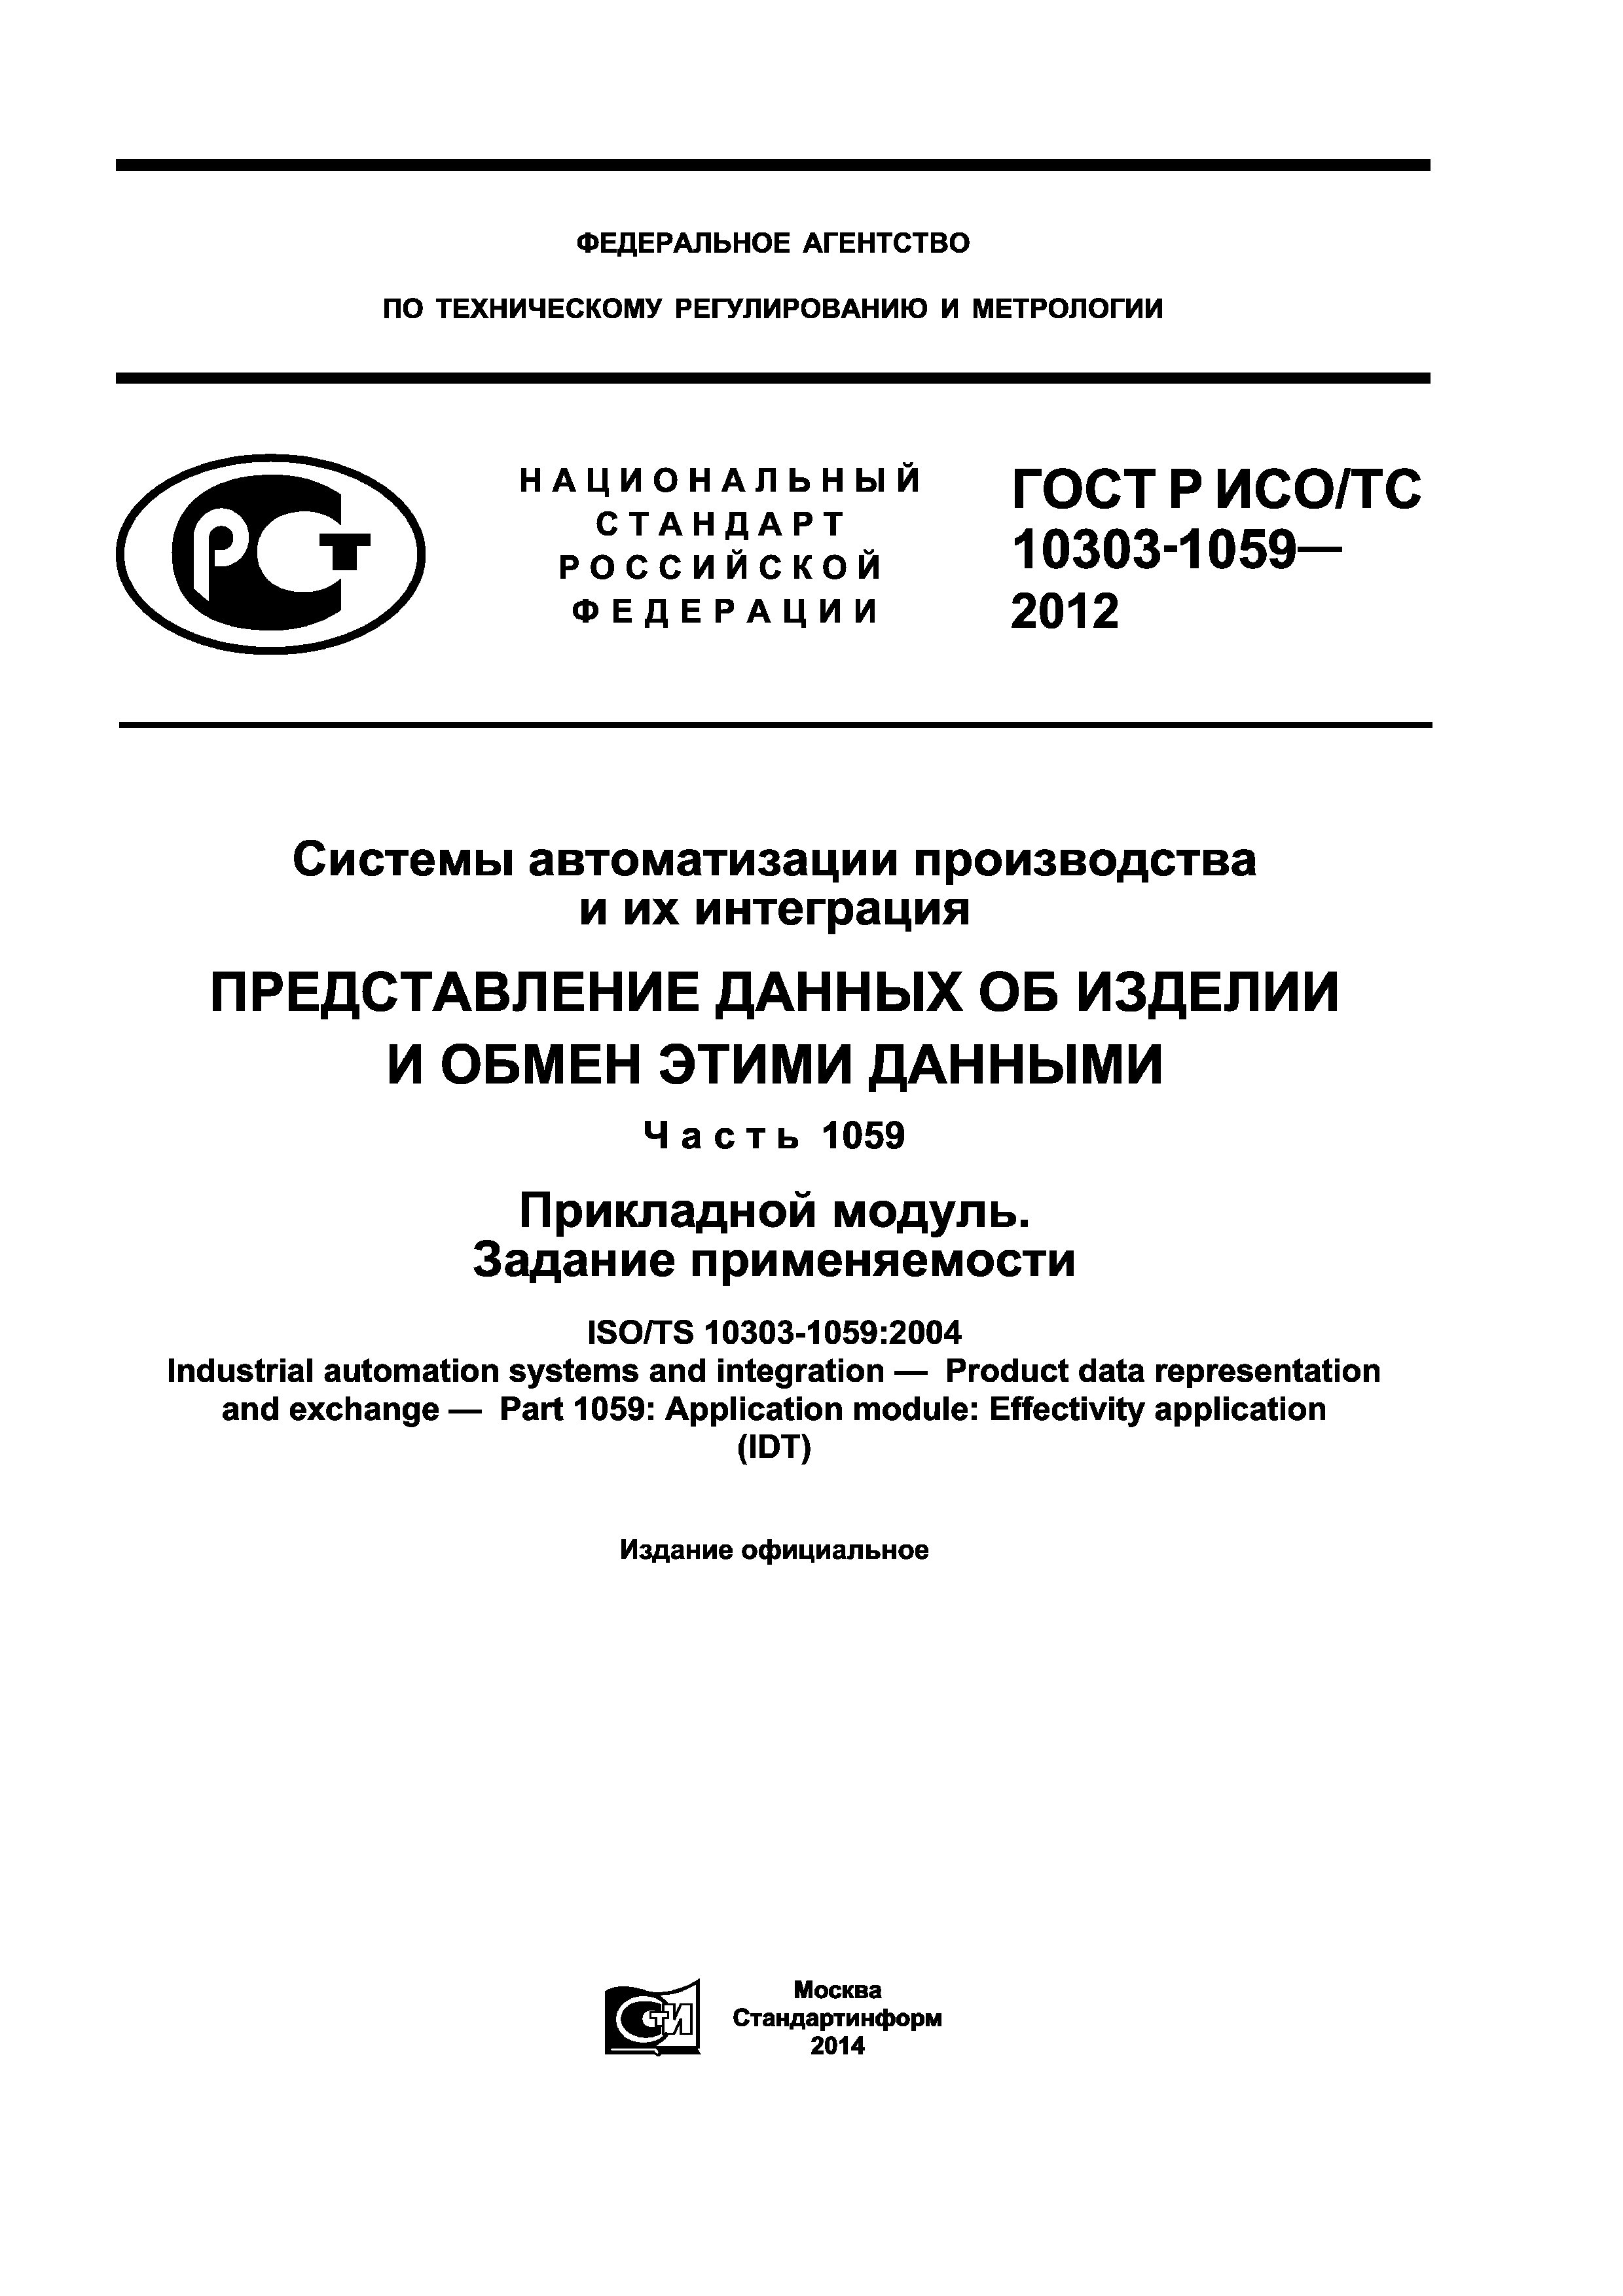 ГОСТ Р ИСО/ТС 10303-1059-2012